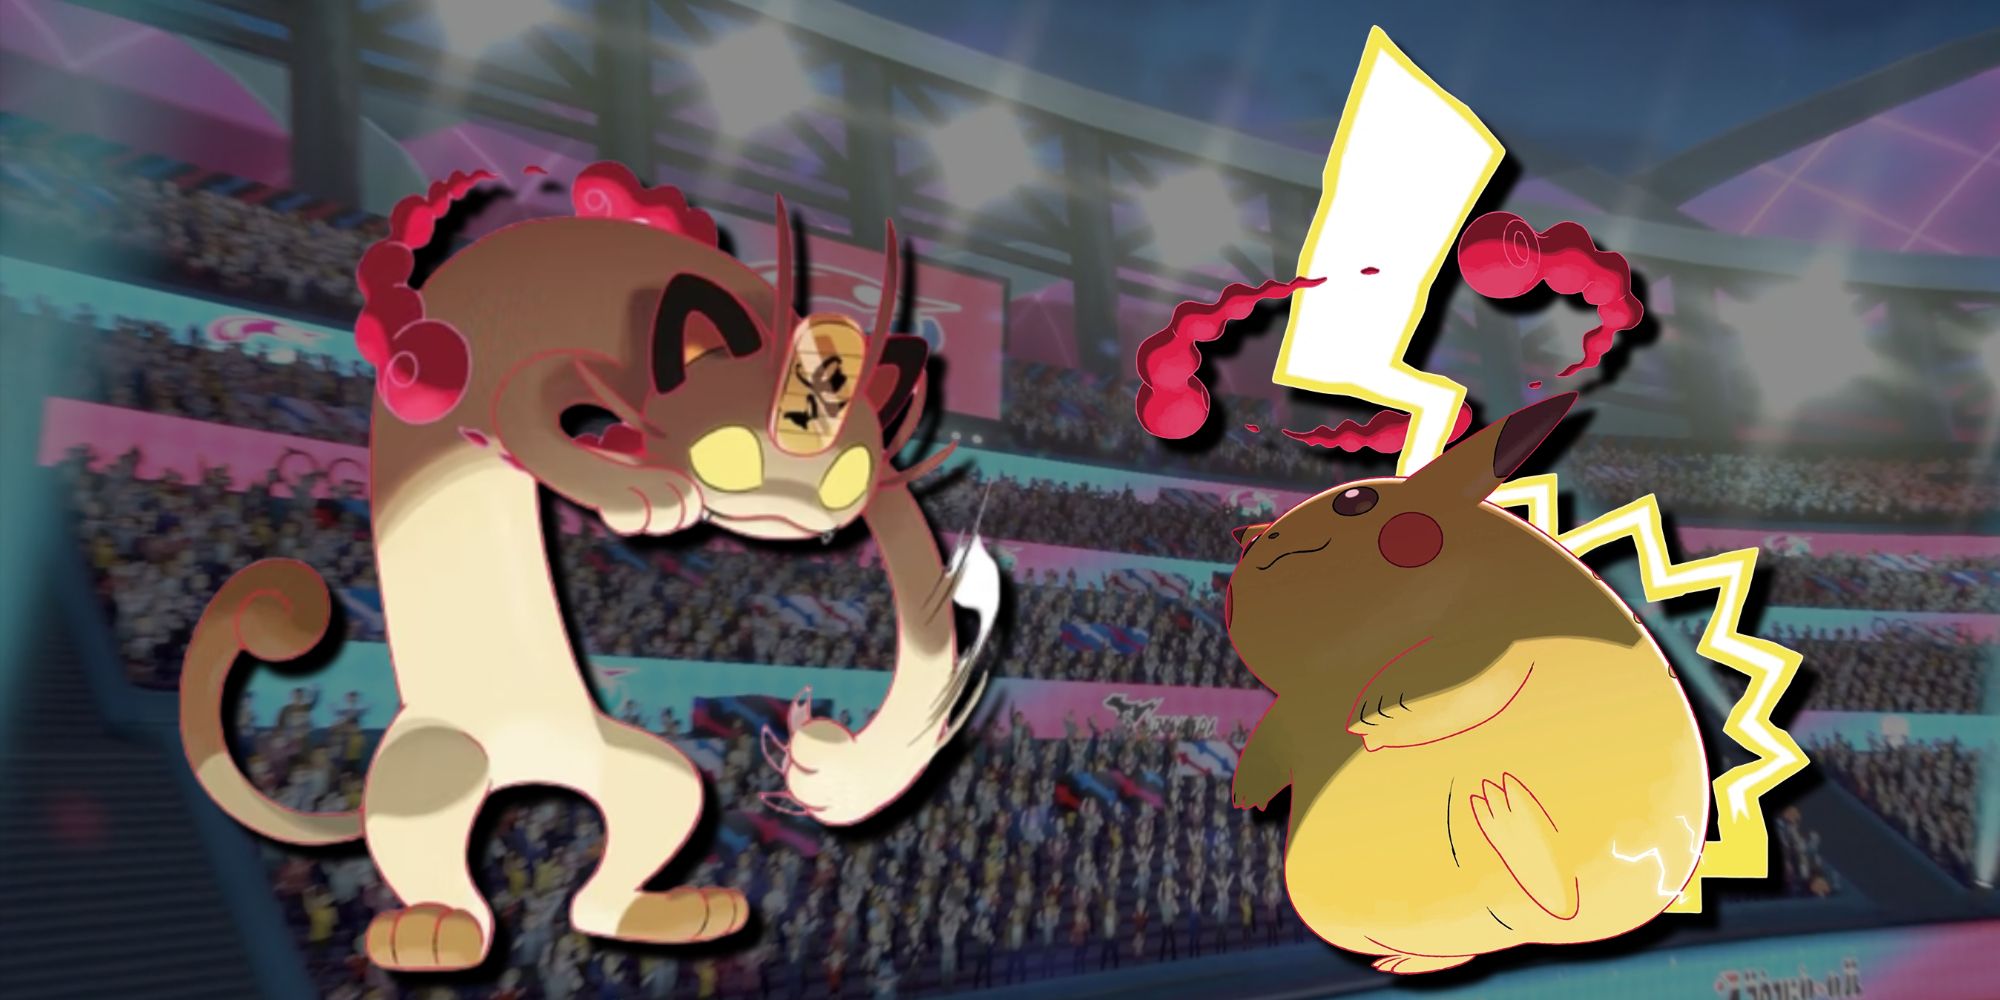 Gigantamax Meowth Gigantamax Pikachu Battle